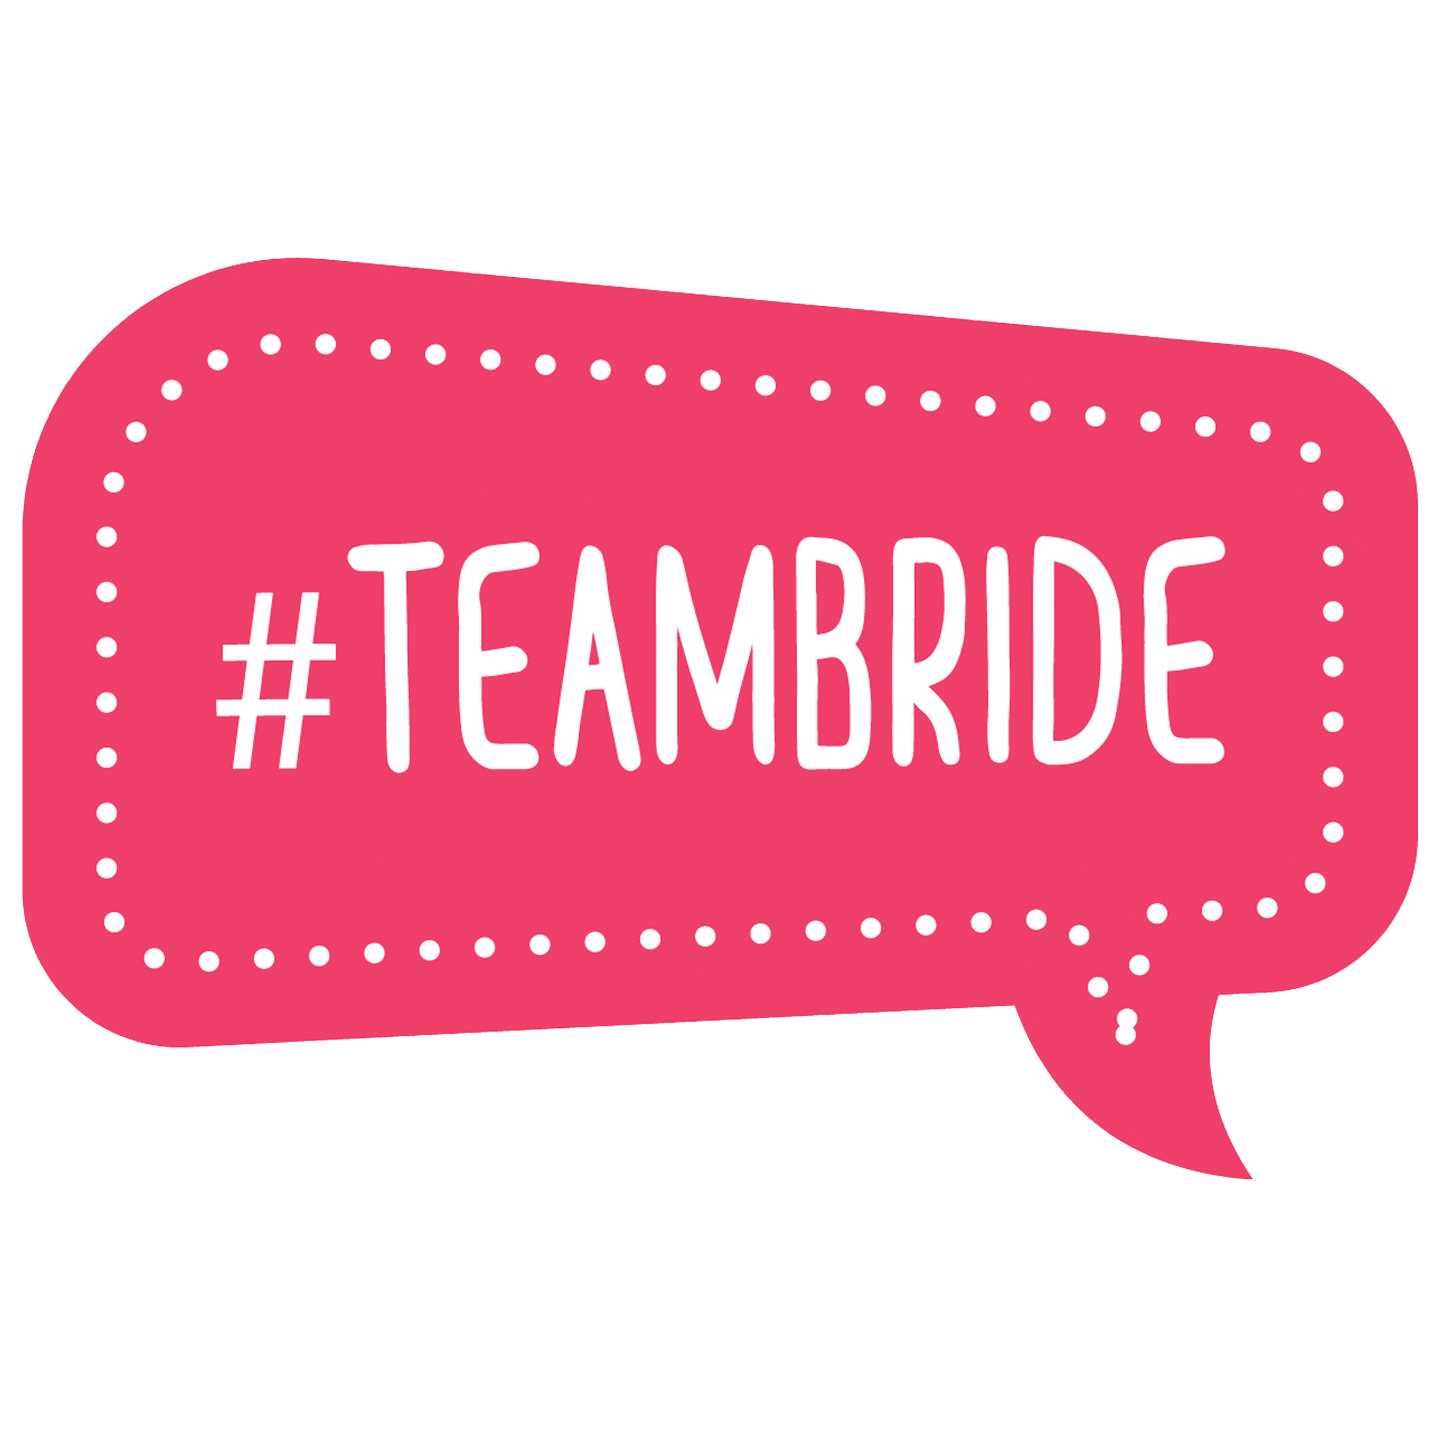 Team-Bride-1